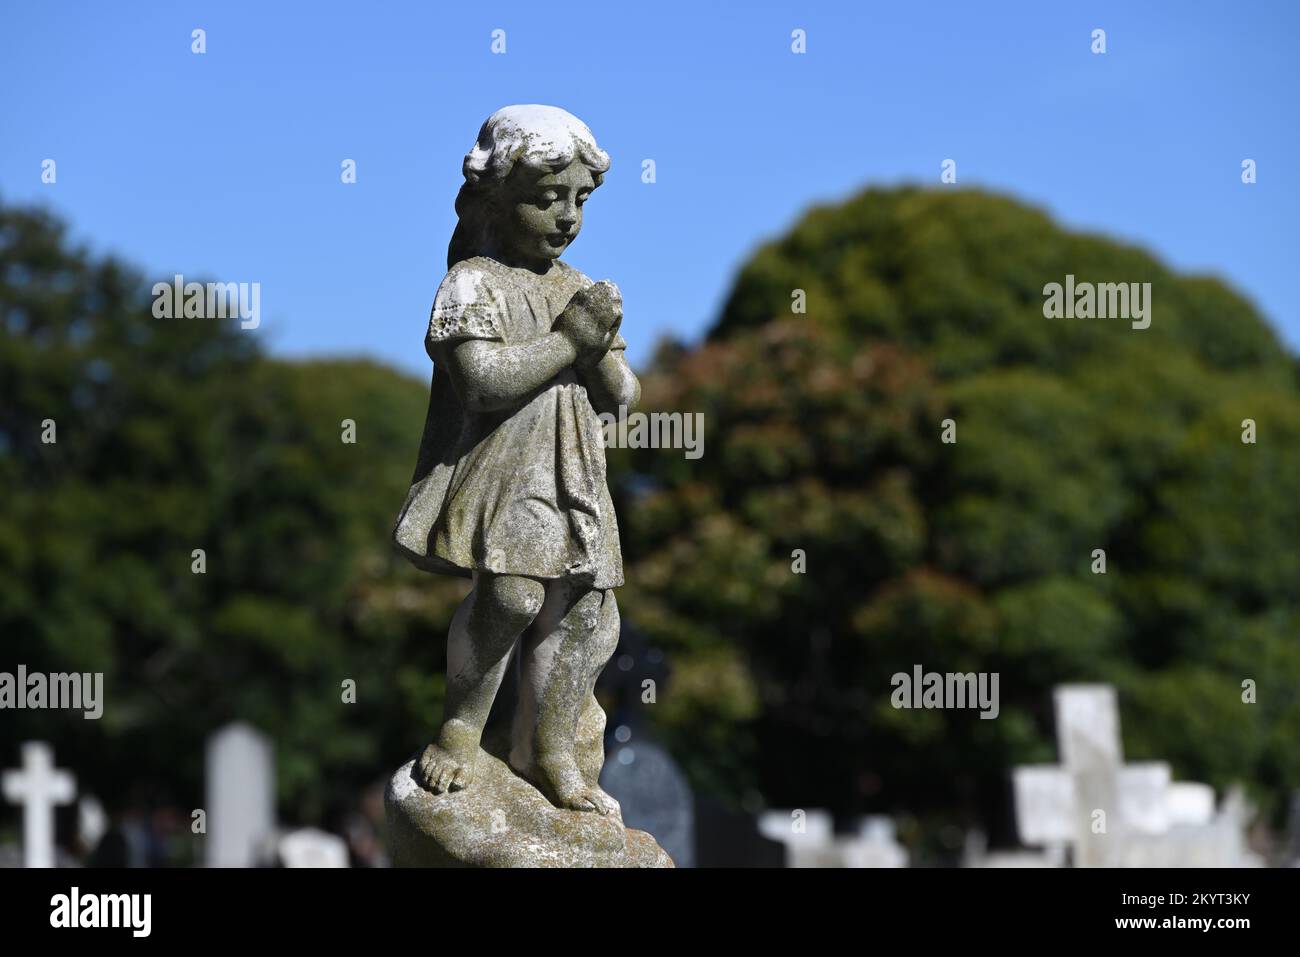 Alte, abgenutzte und verwitterte Steinskulptur eines umhüllten Kindes, das trauernd nach unten schaute, Hände zusammengefesselt im Gebet, auf einem Friedhof Stockfoto